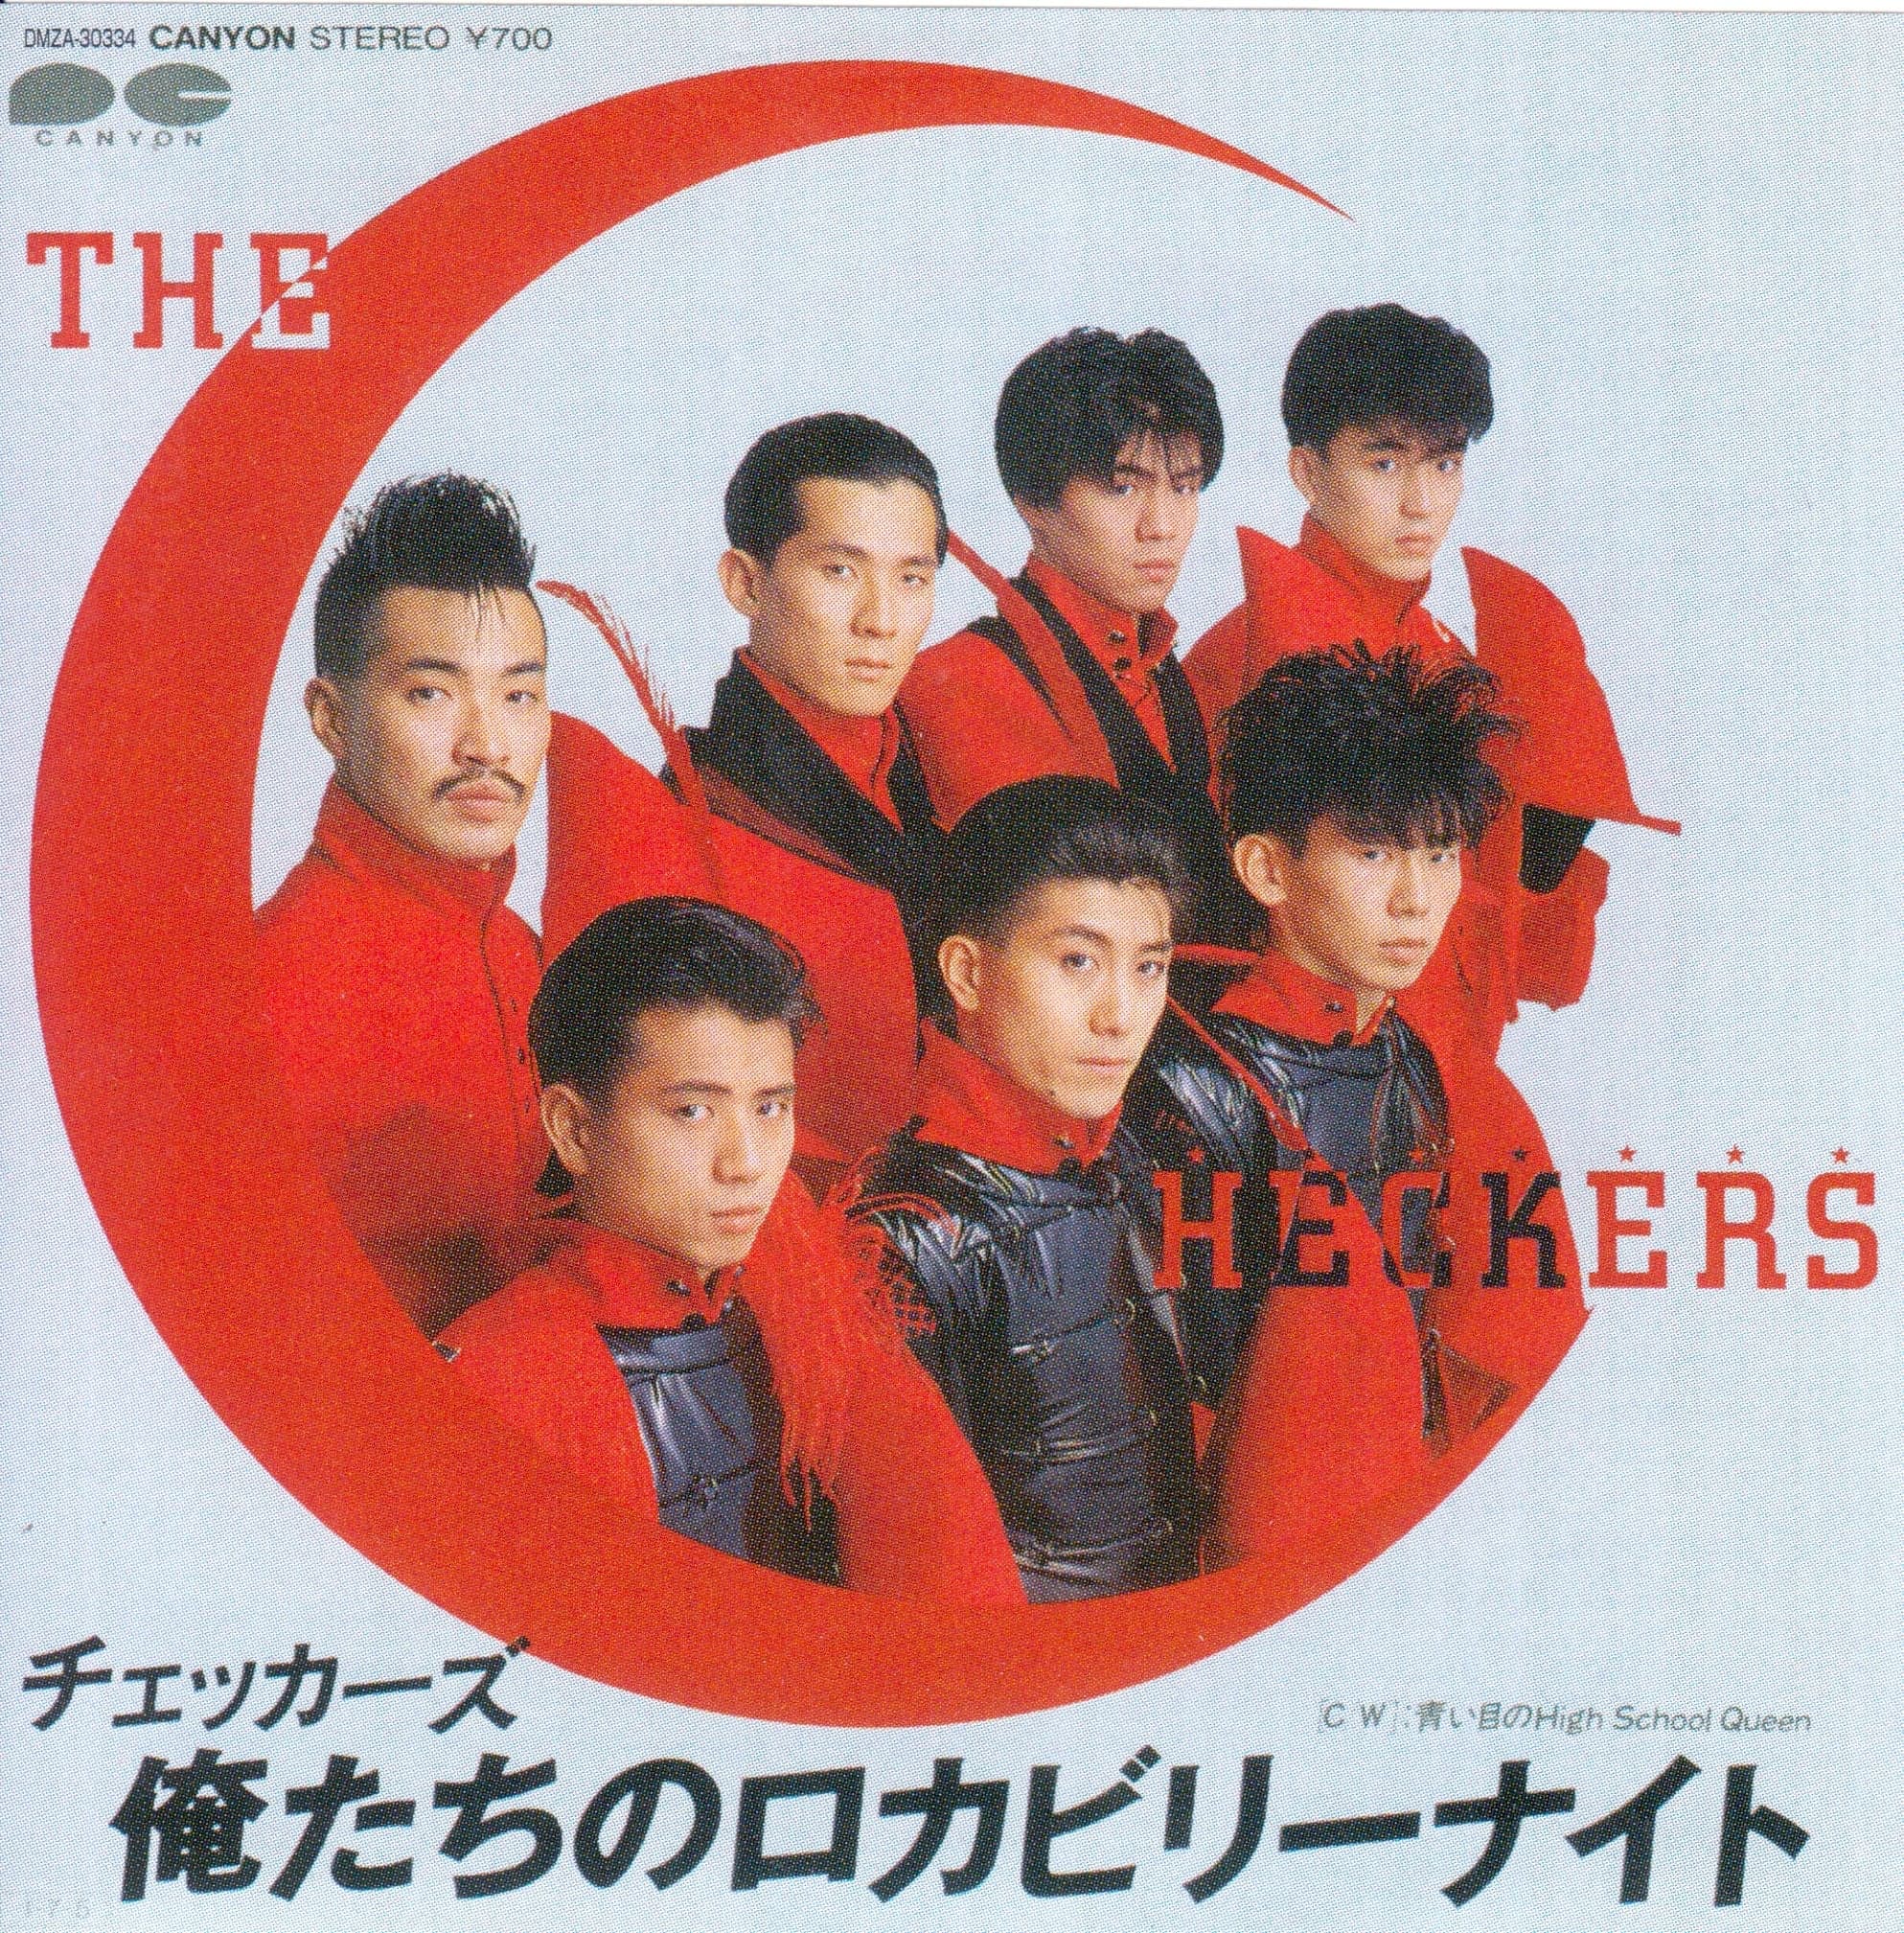 俺たちのロカビリーナイト by The Checkers - 3 Records